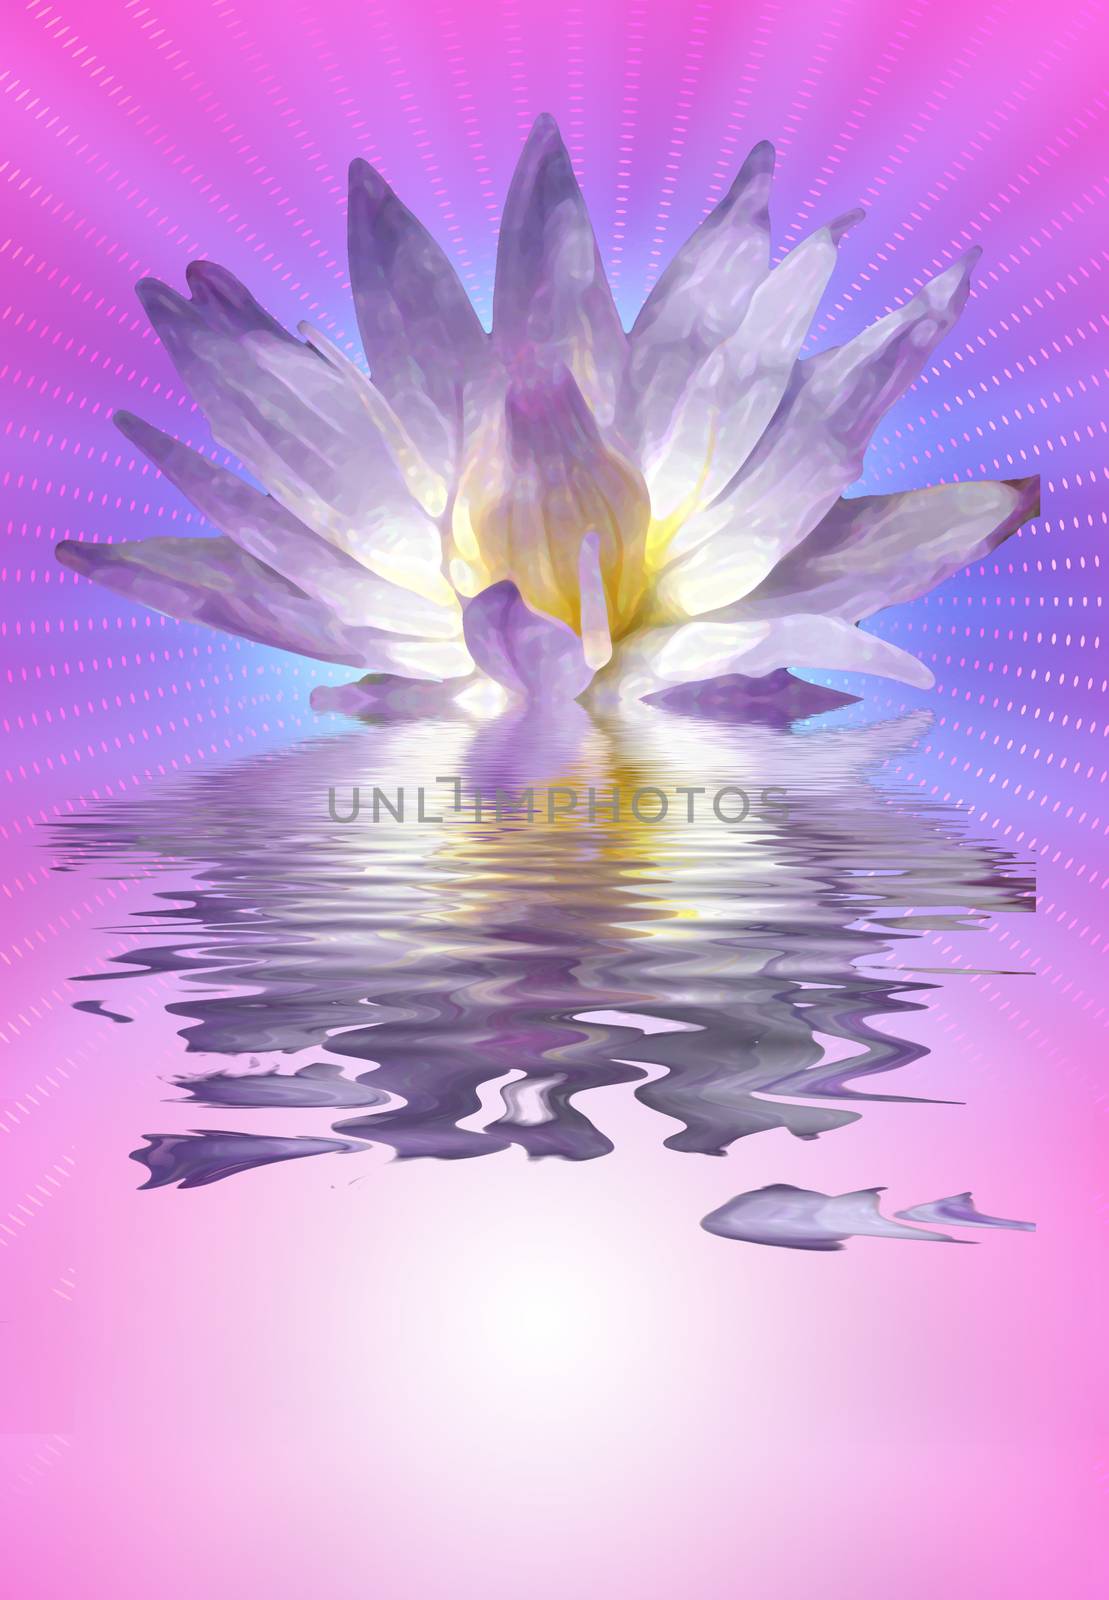 Lotus flower by applesstock